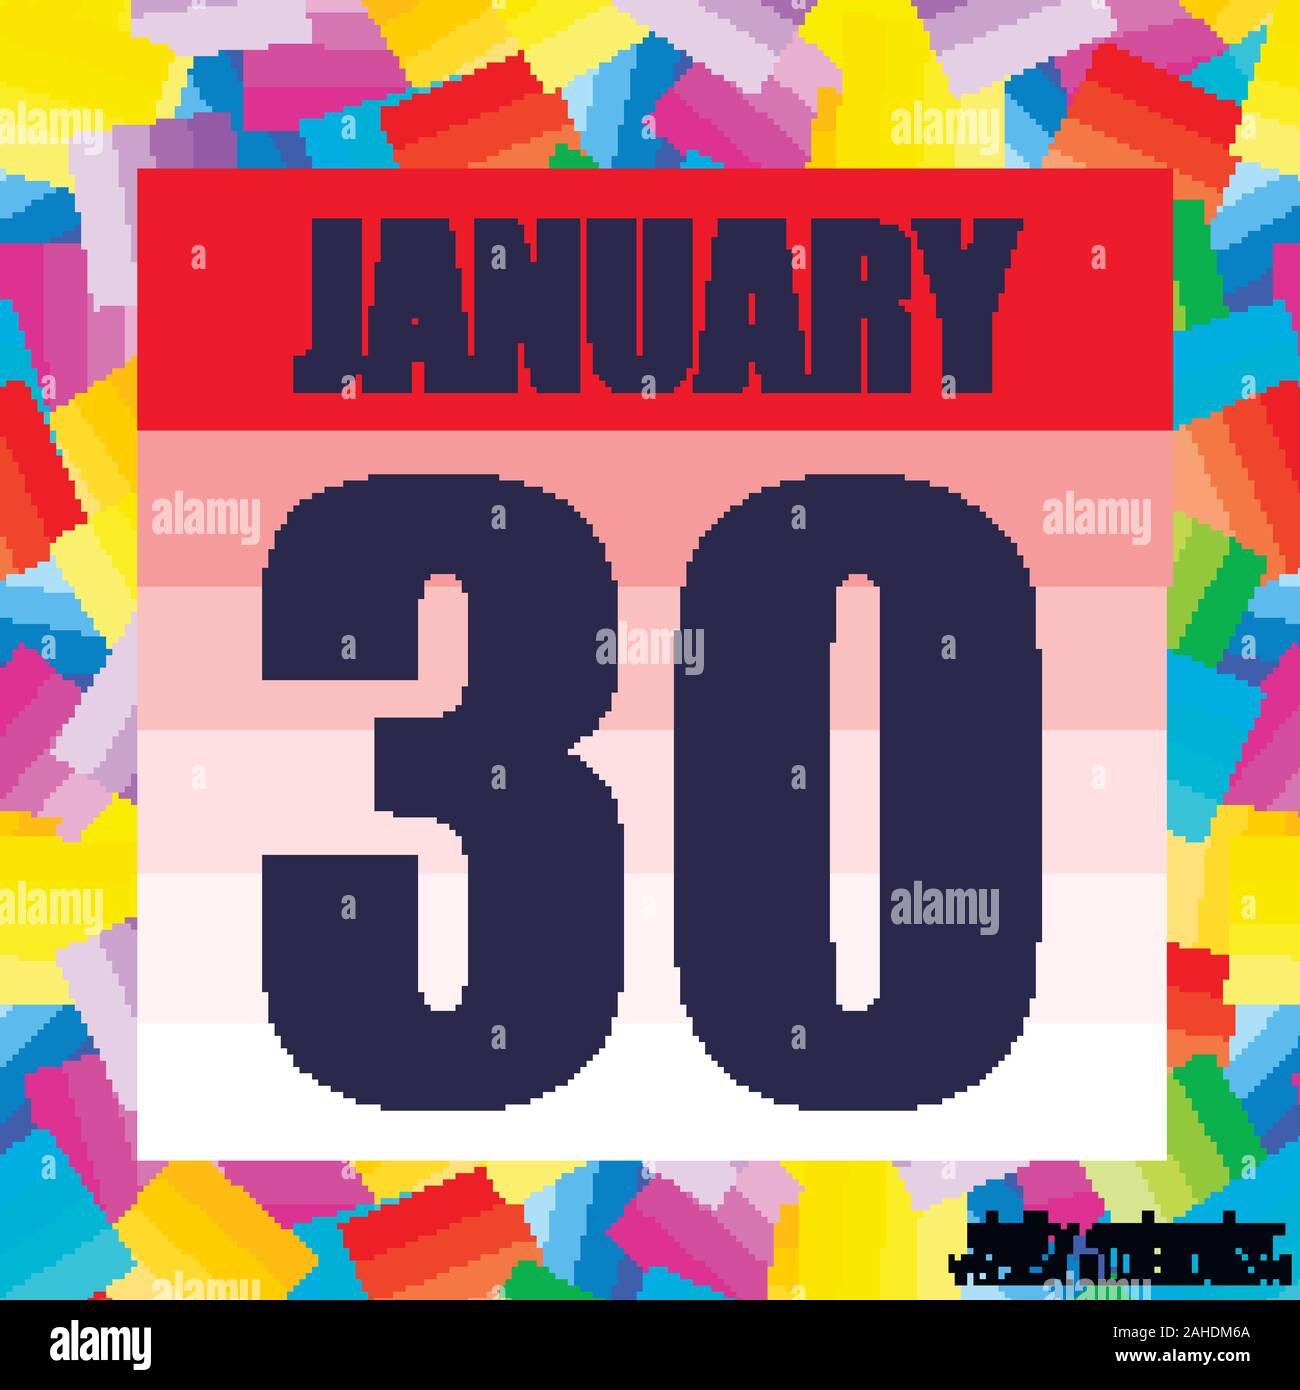 Januar 30 Symbol. Für wichtige Tag planen. Banner für Feiertage und  besondere Tage. 30. Januar. Vector Illustration Stock-Vektorgrafik - Alamy